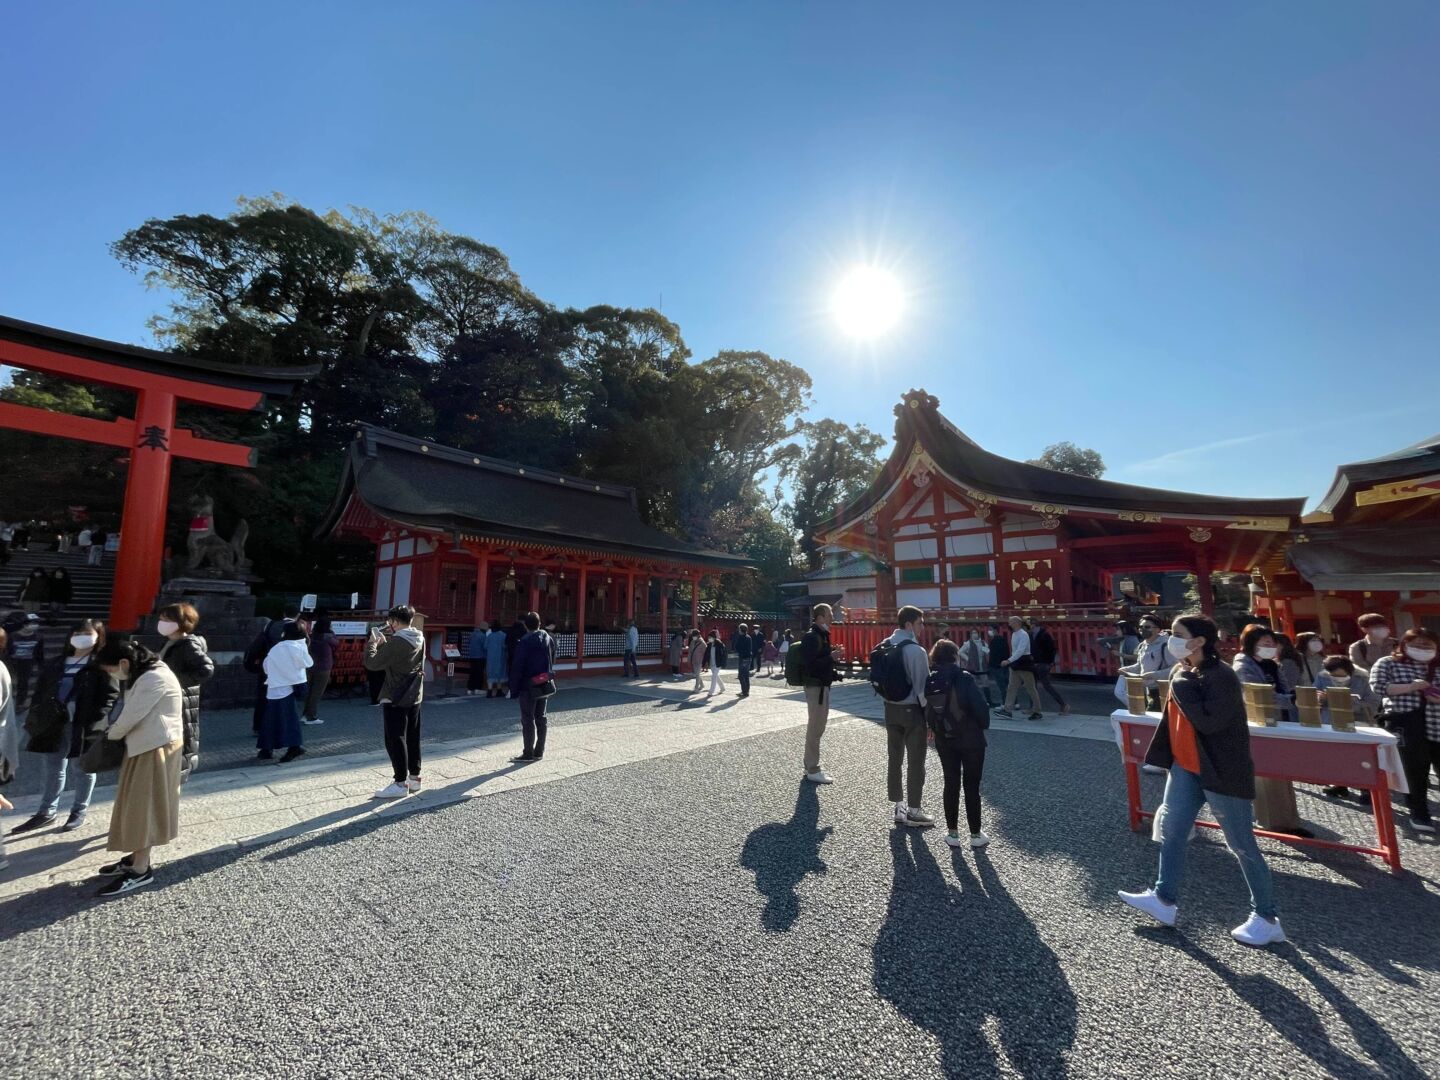 Foto contra o sol do templo Inari, tem várias pessoas e todas as construções são vermelho e branco.